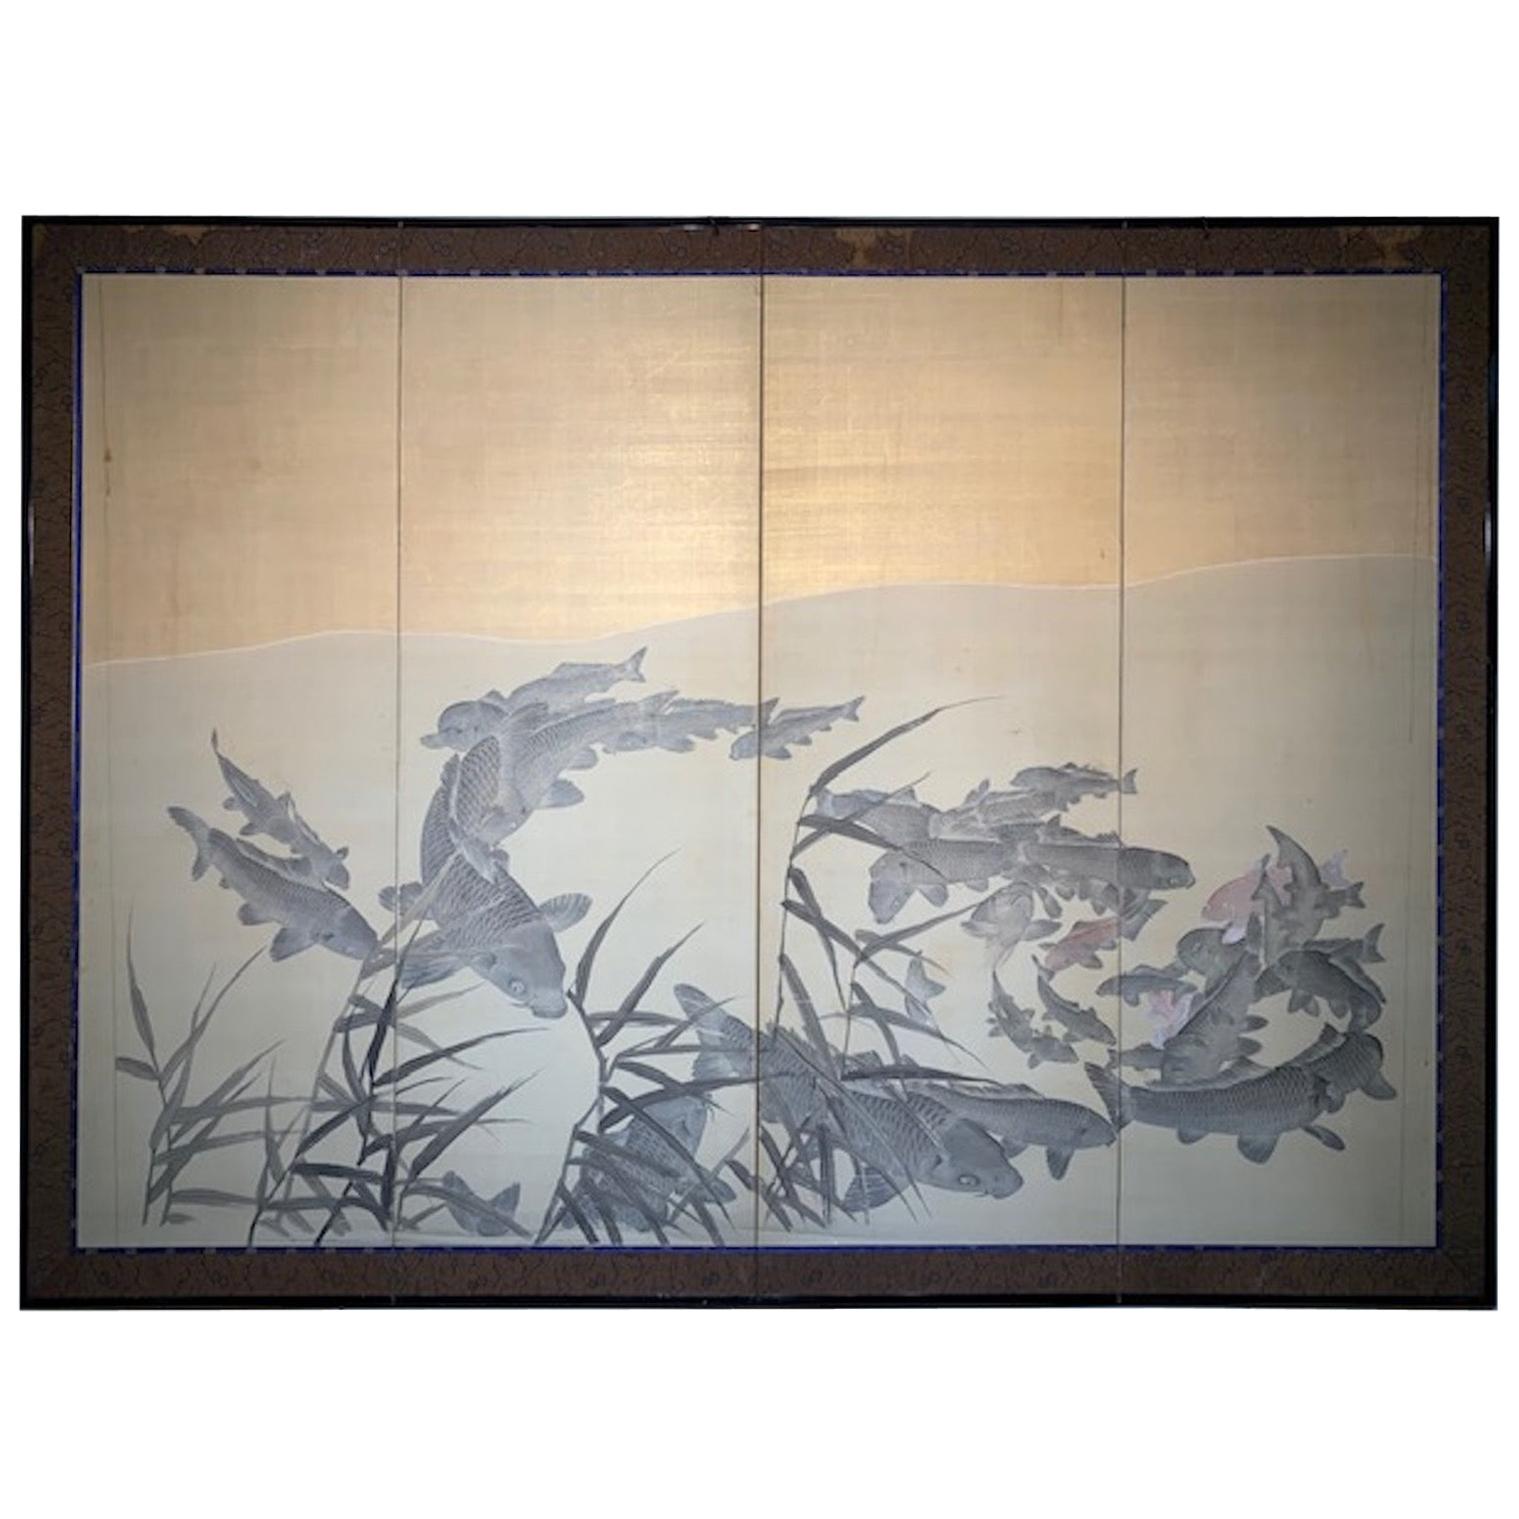 Taisho Period, '1912-1926' Four-Panel Koi Screen For Sale